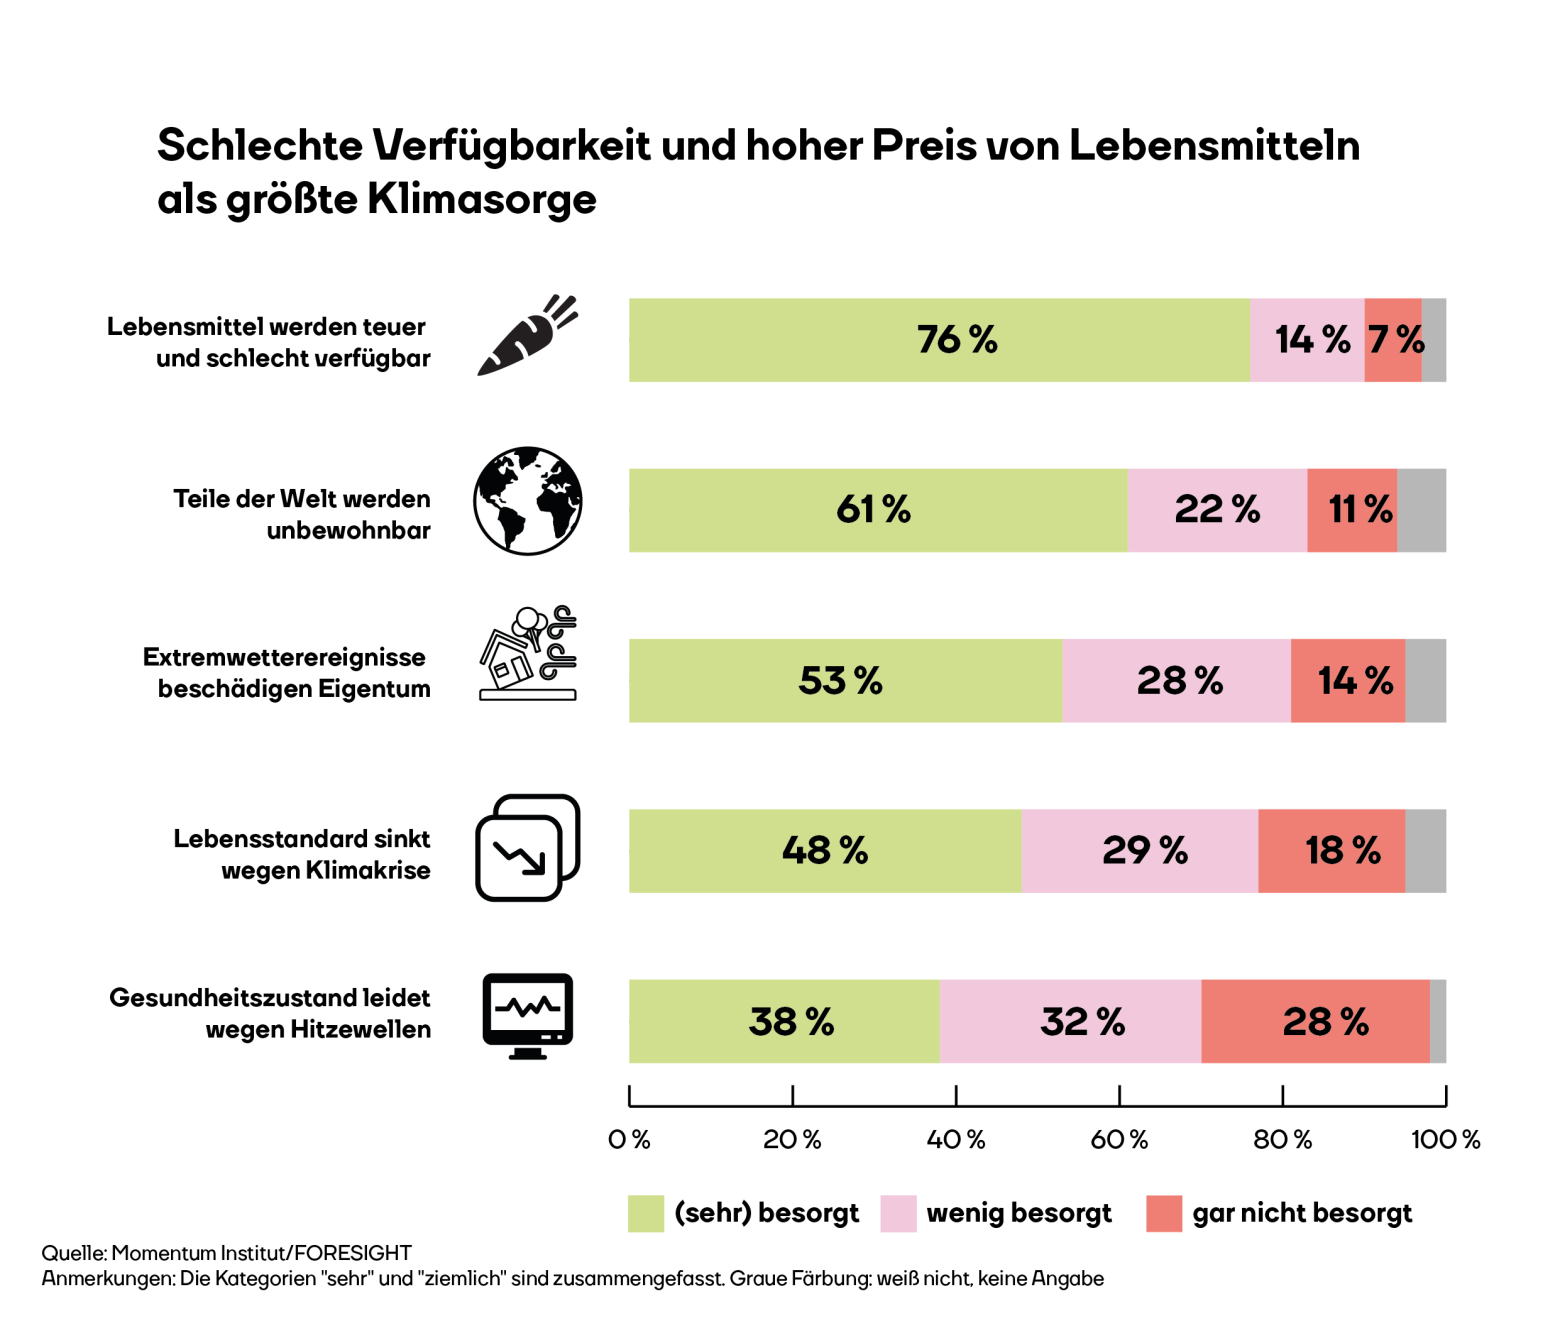 Die Grafik zeigt, dass die Lebensmittelsicherheit und höhere Preise für Lebensmittel die größte Sorge der Menschen in Österreich ist mit 76 % Zustimmung. Gefolgt davon, dass Teile der Welt unbewohnbar werden (61 %), Schäden am Eigentum durch Extremwetter (53 %), niedrigerer Lebensstandard (48 %) und schlechterer Gesundheitszustand (38 %).